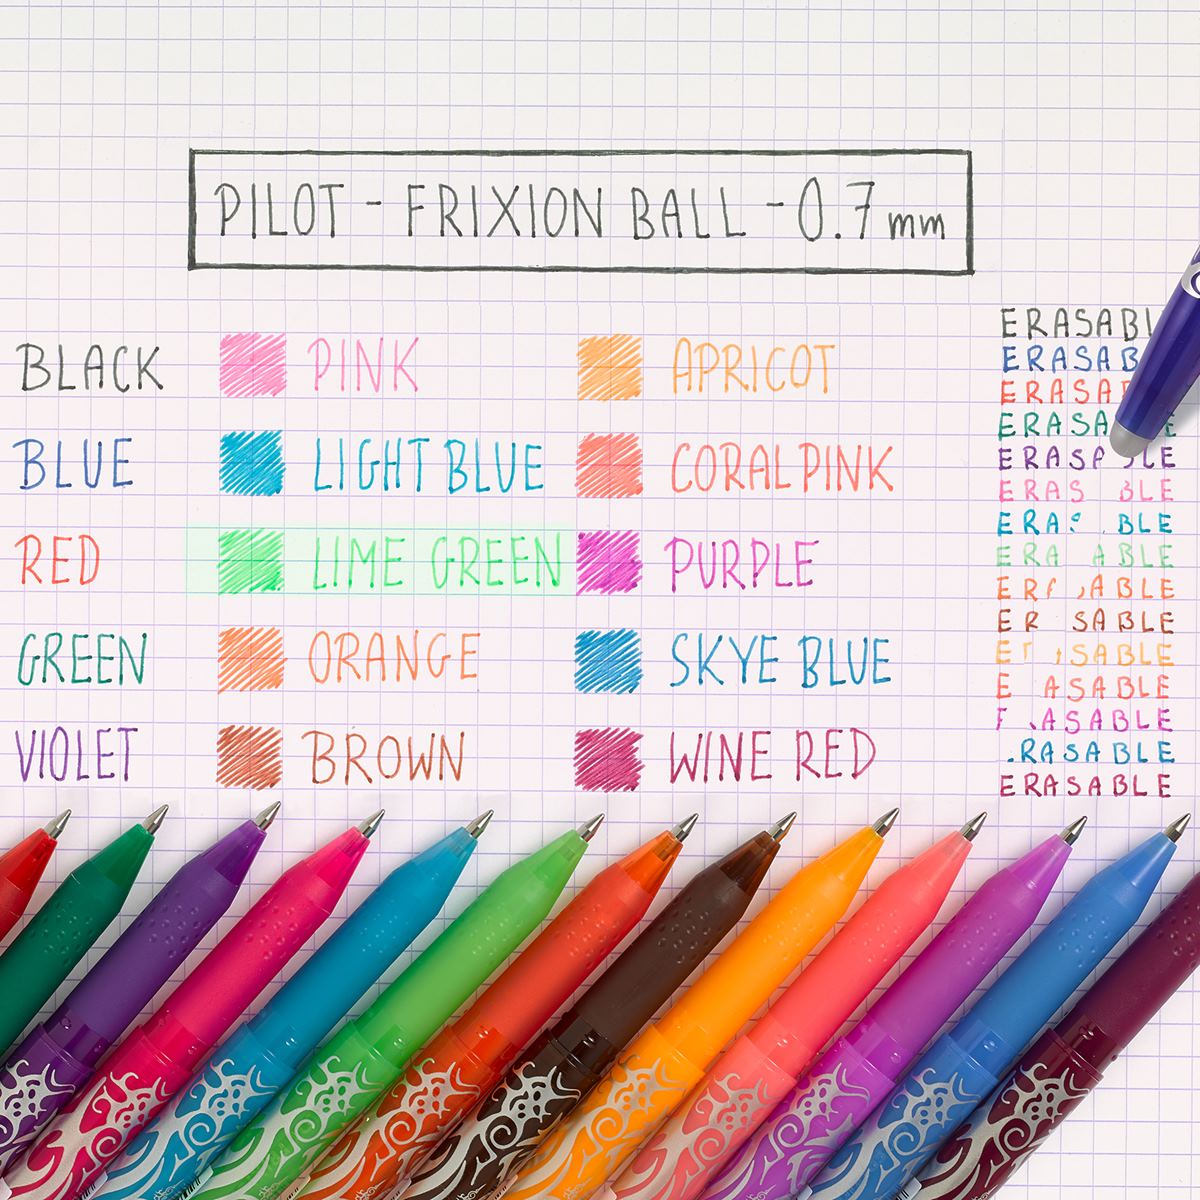 Pilot FriXion Ball Erasable Rollerball Pen - Sky Blue